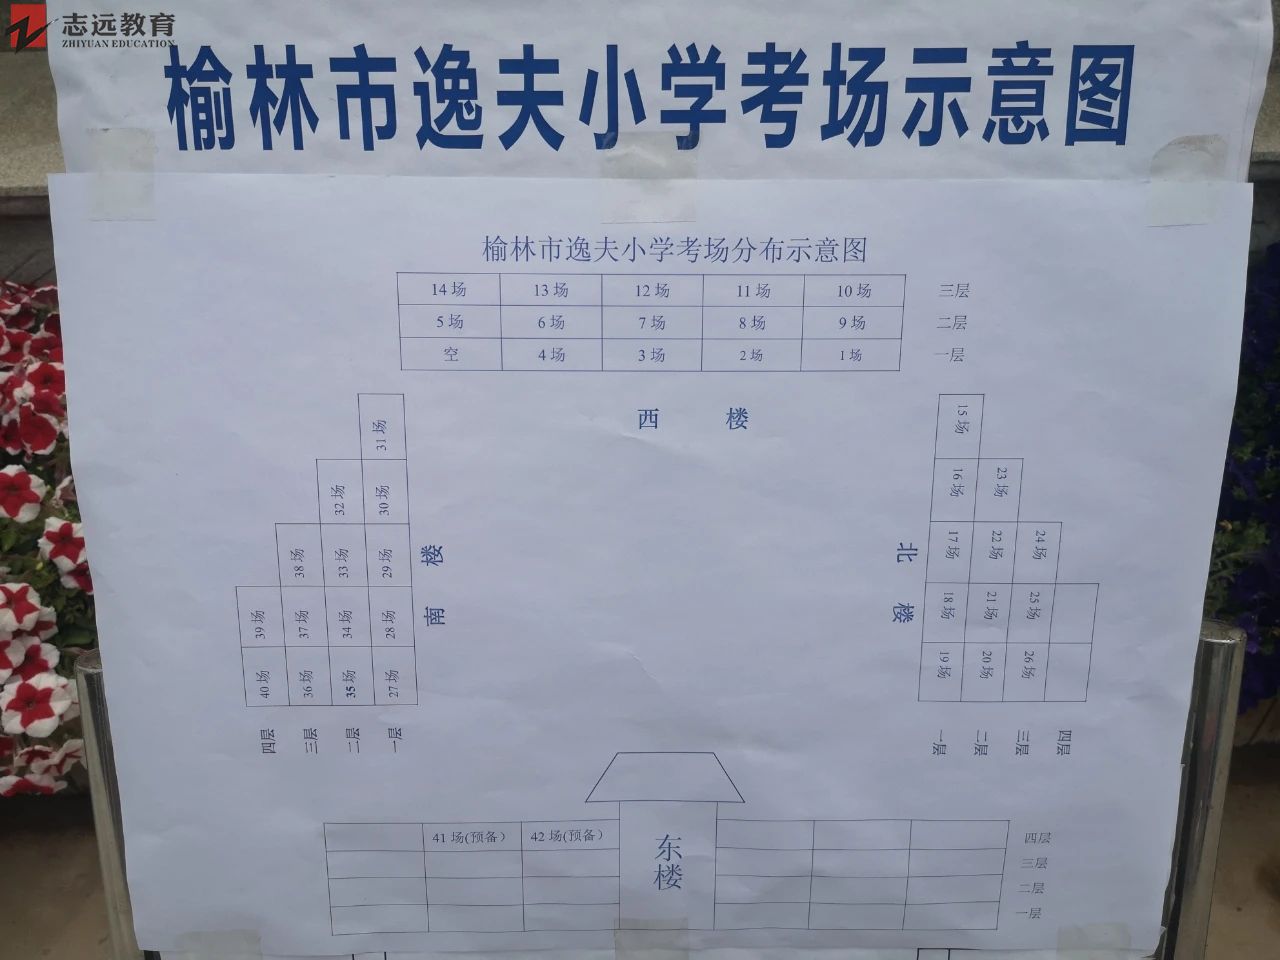 2020陕西公务员考试考场分布图榆林考点(榆林逸夫小学)(图1)